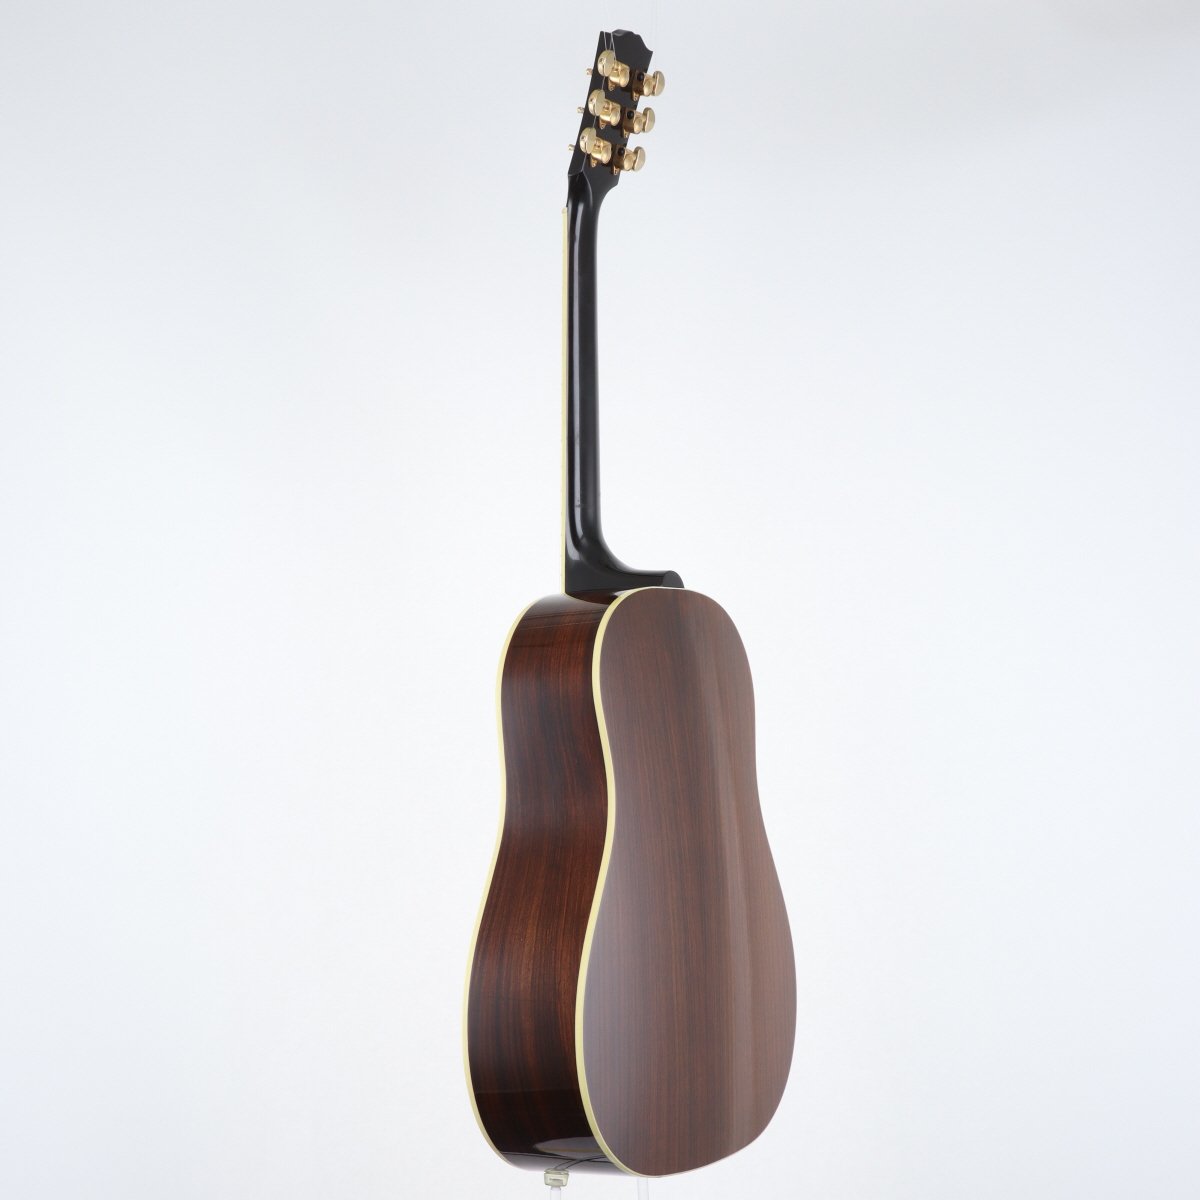 [SN 12132017] USED Gibson / J-45 Custom Rosewood VintageSunburst [11]